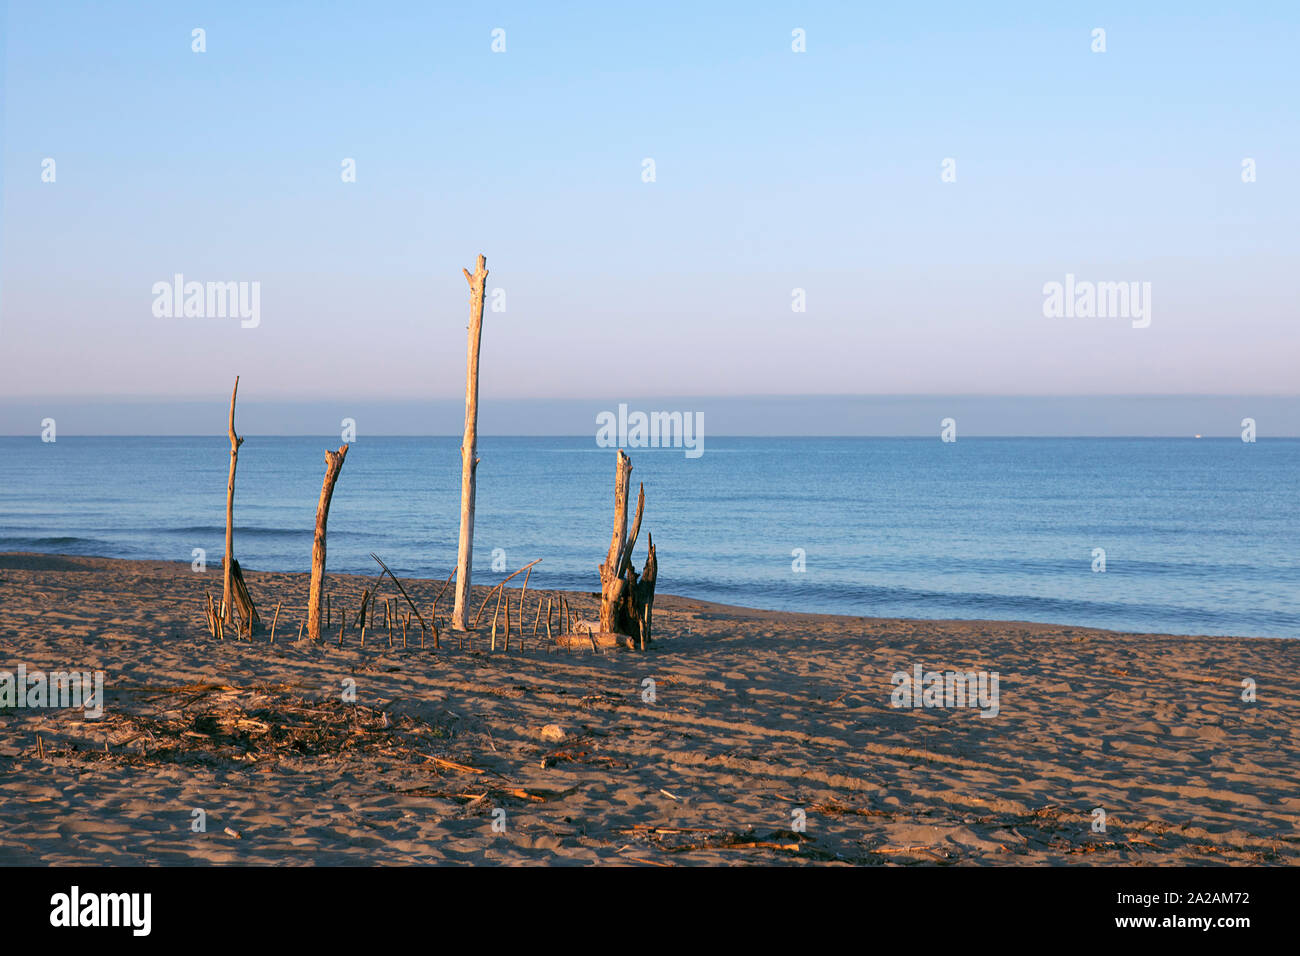 Une sculpture de bois sur la plage, des brindilles sur la plage de la construction en bois, plantés dans le sable. Land Art, sur la côte de la mer, paysage marin au matin Banque D'Images